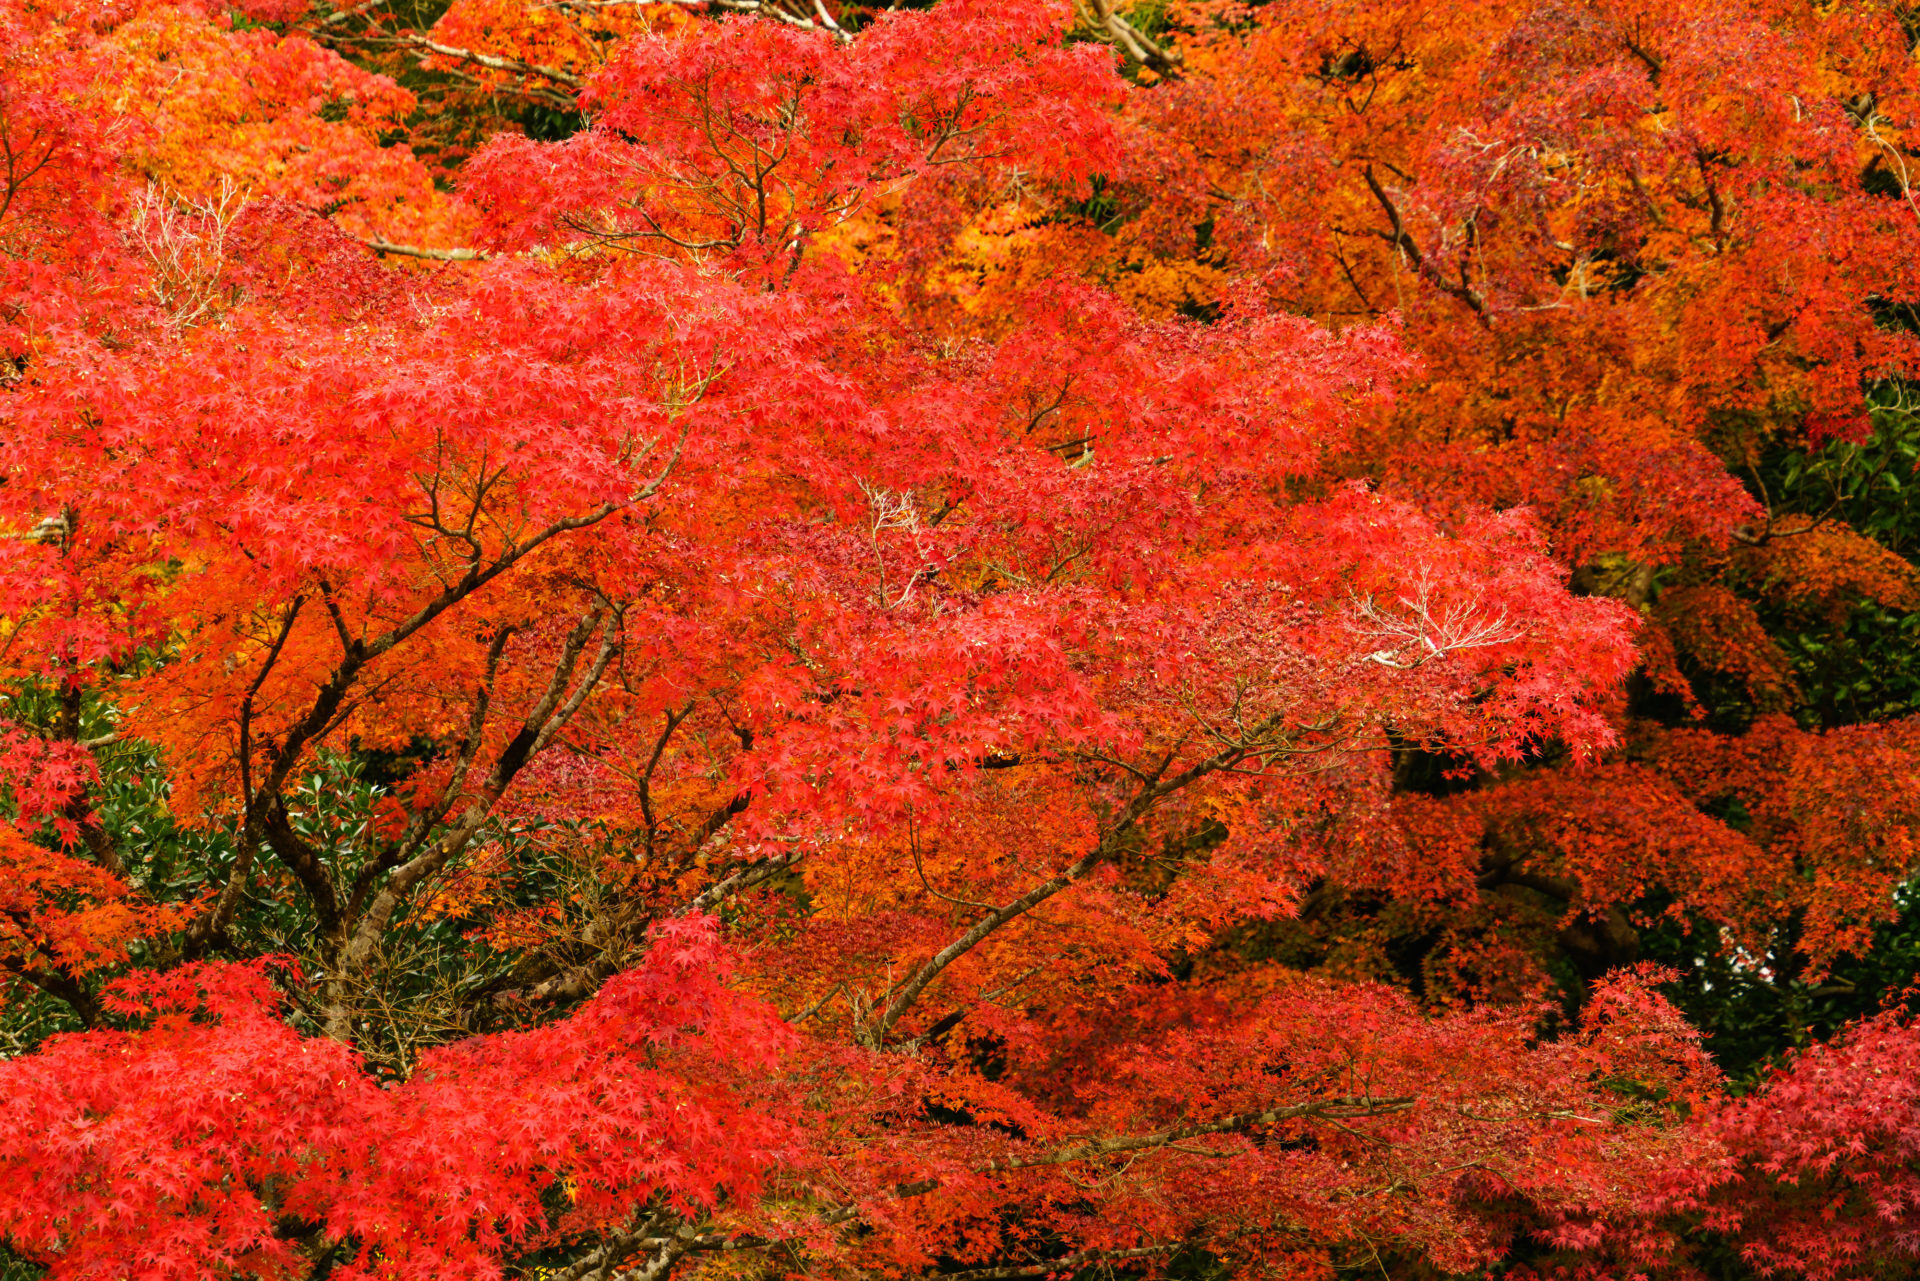 京都 嵐山の紅葉が最も美しい時期は 嵐山の紅葉の見ごろと見どころをまとめました Caedekyoto カエデ京都 紅葉と伝統美を引き継ぐバッグ